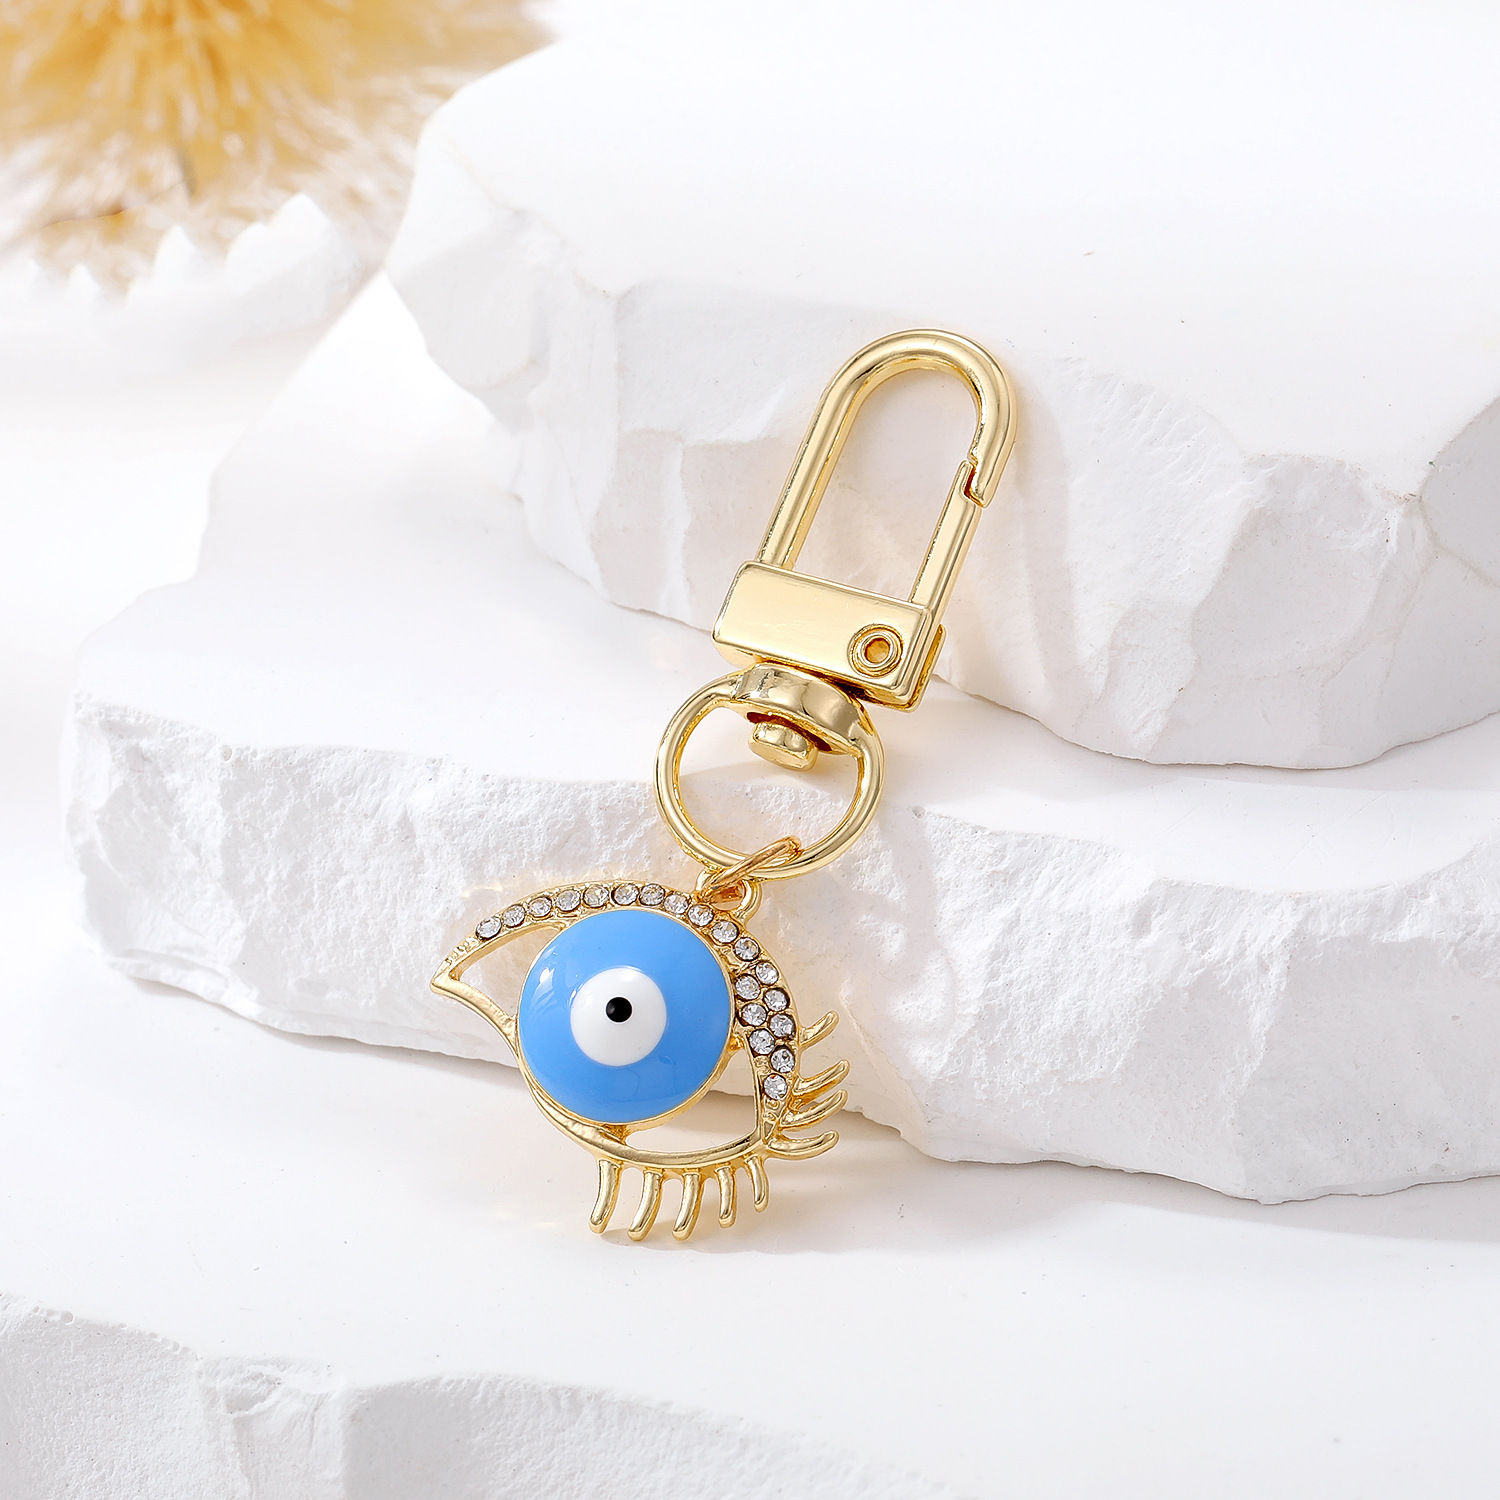 المينا رموش شرير العين خيال المفتاح حلقات مفتاح محظوظات الأزرق الأزرق أكياس السيارة الإكسسوارات المجوهرات المجوهرات